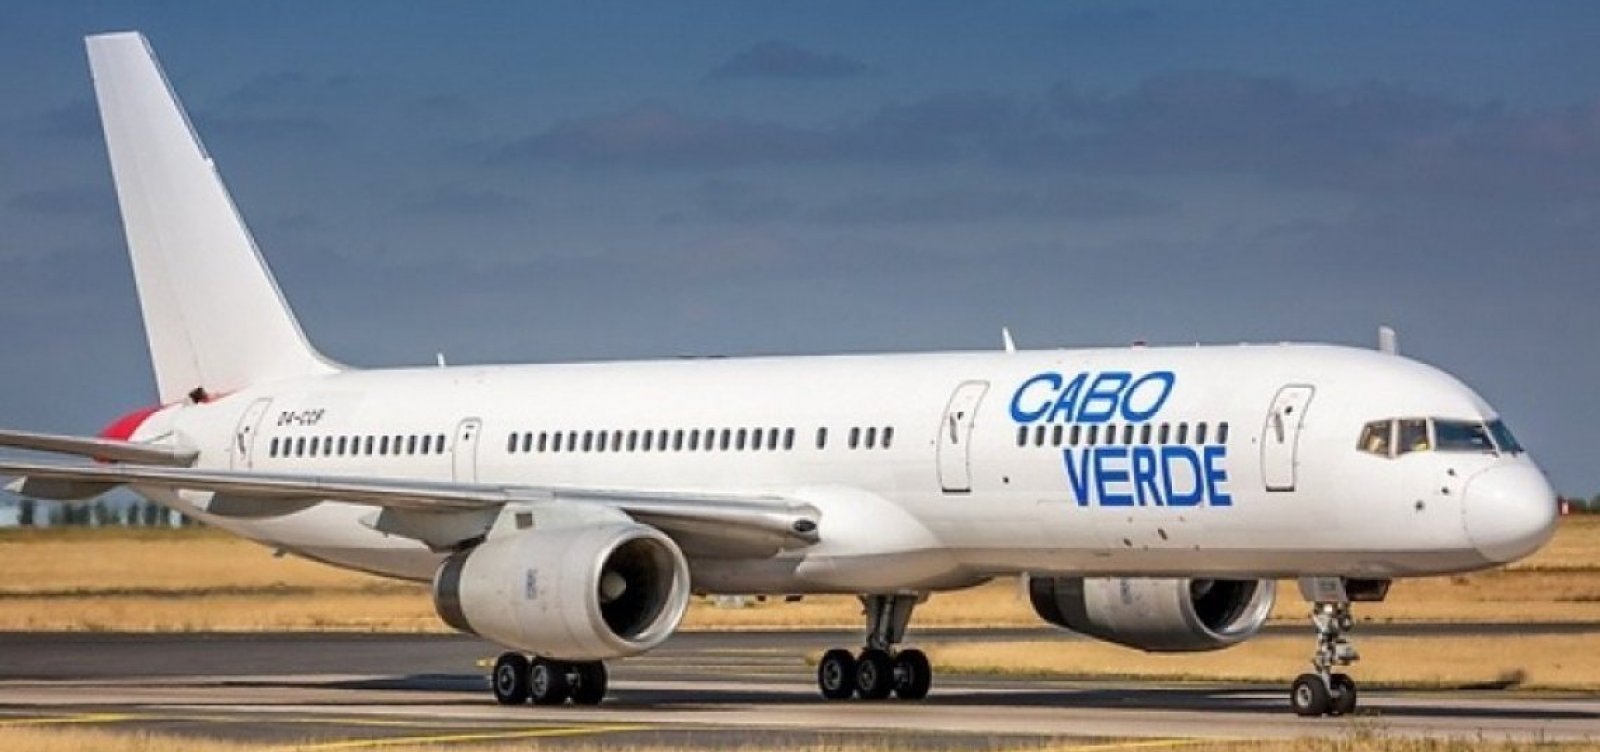 Aérea muda percurso e Salvador perde voo para Cabo Verde